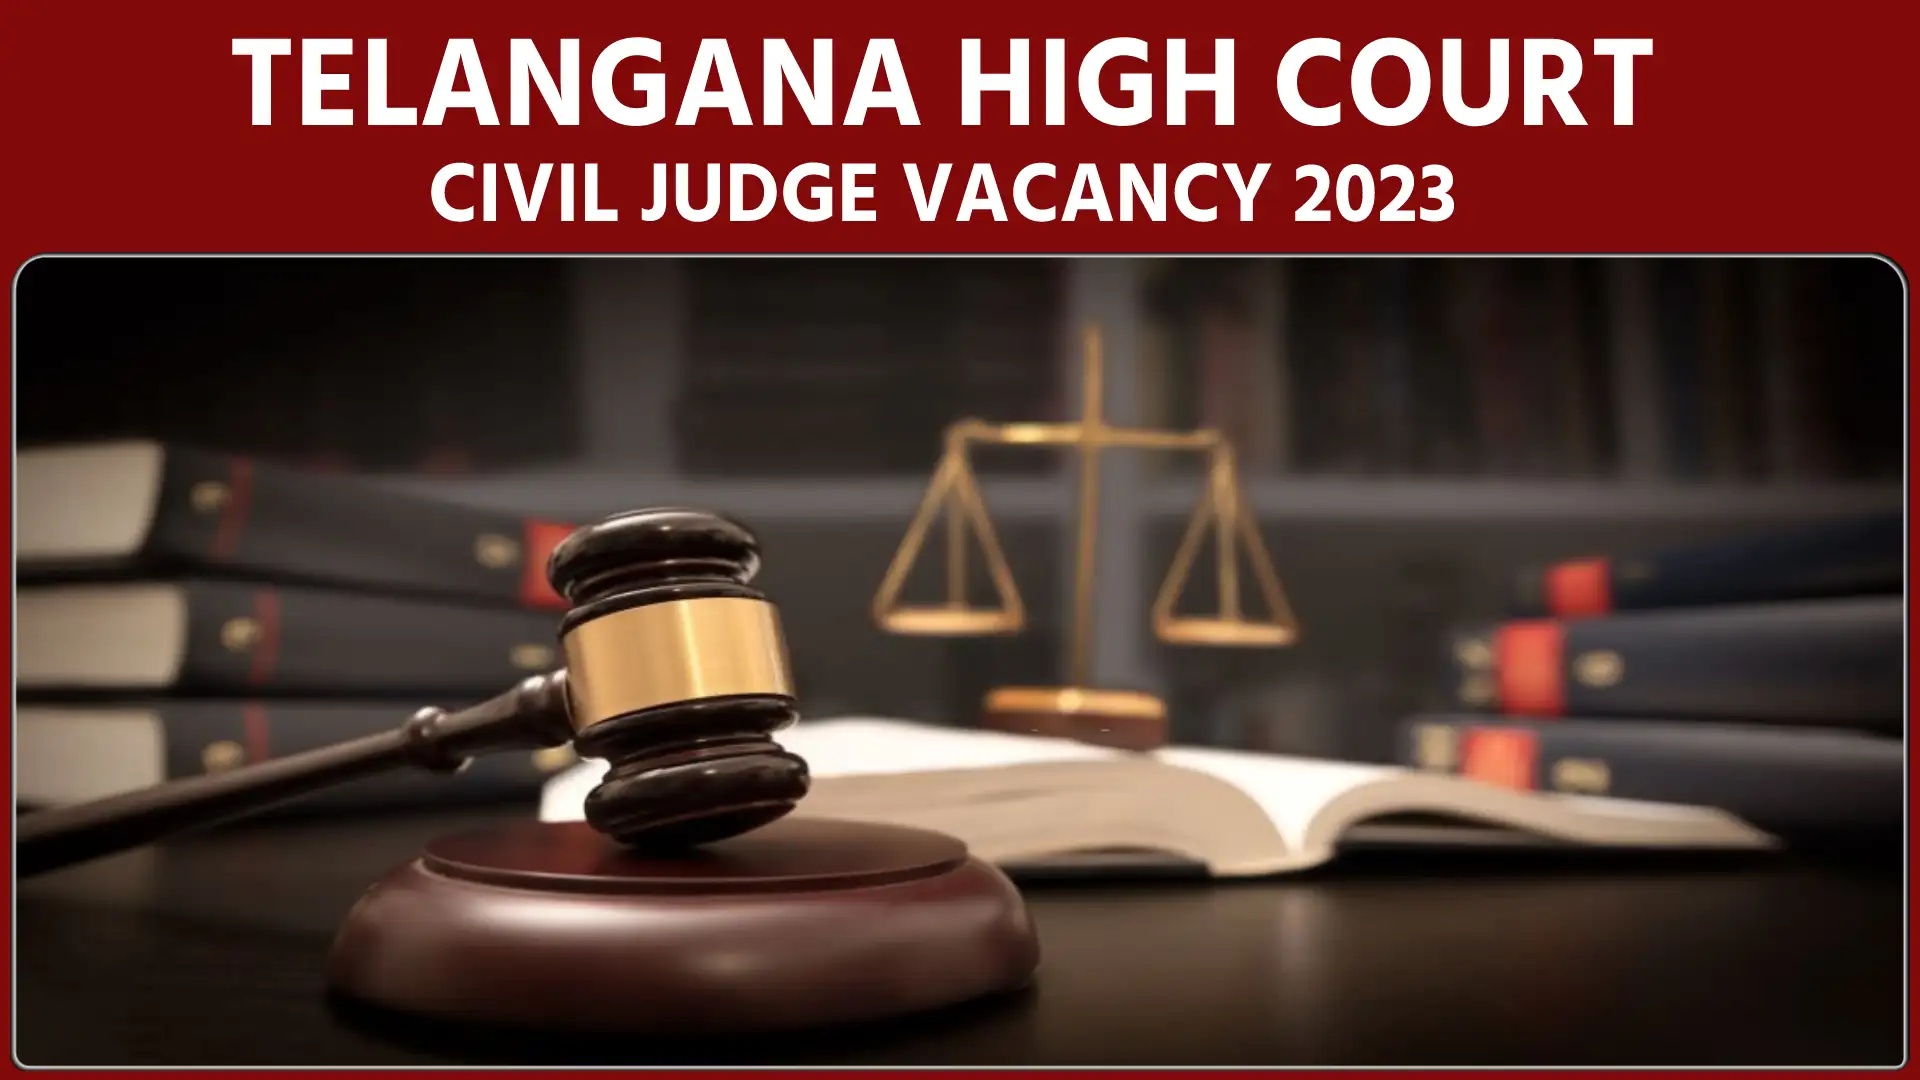 Telangana High Court Civil Judge vacancy 2023